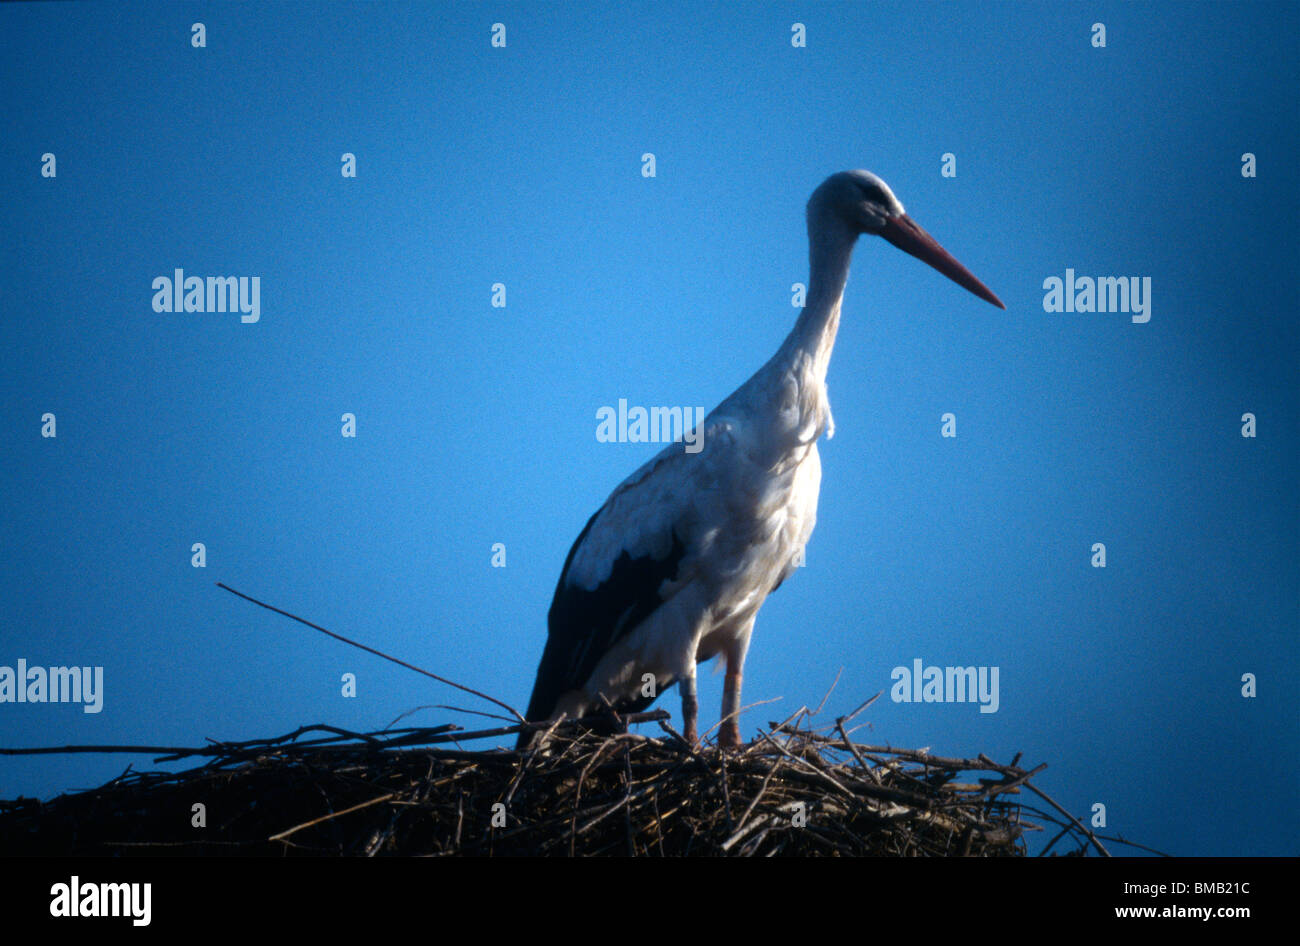 Le Teich France Parc Ornithologique Du Teich Nature Reserve Bird Standing On Nest Stock Photo